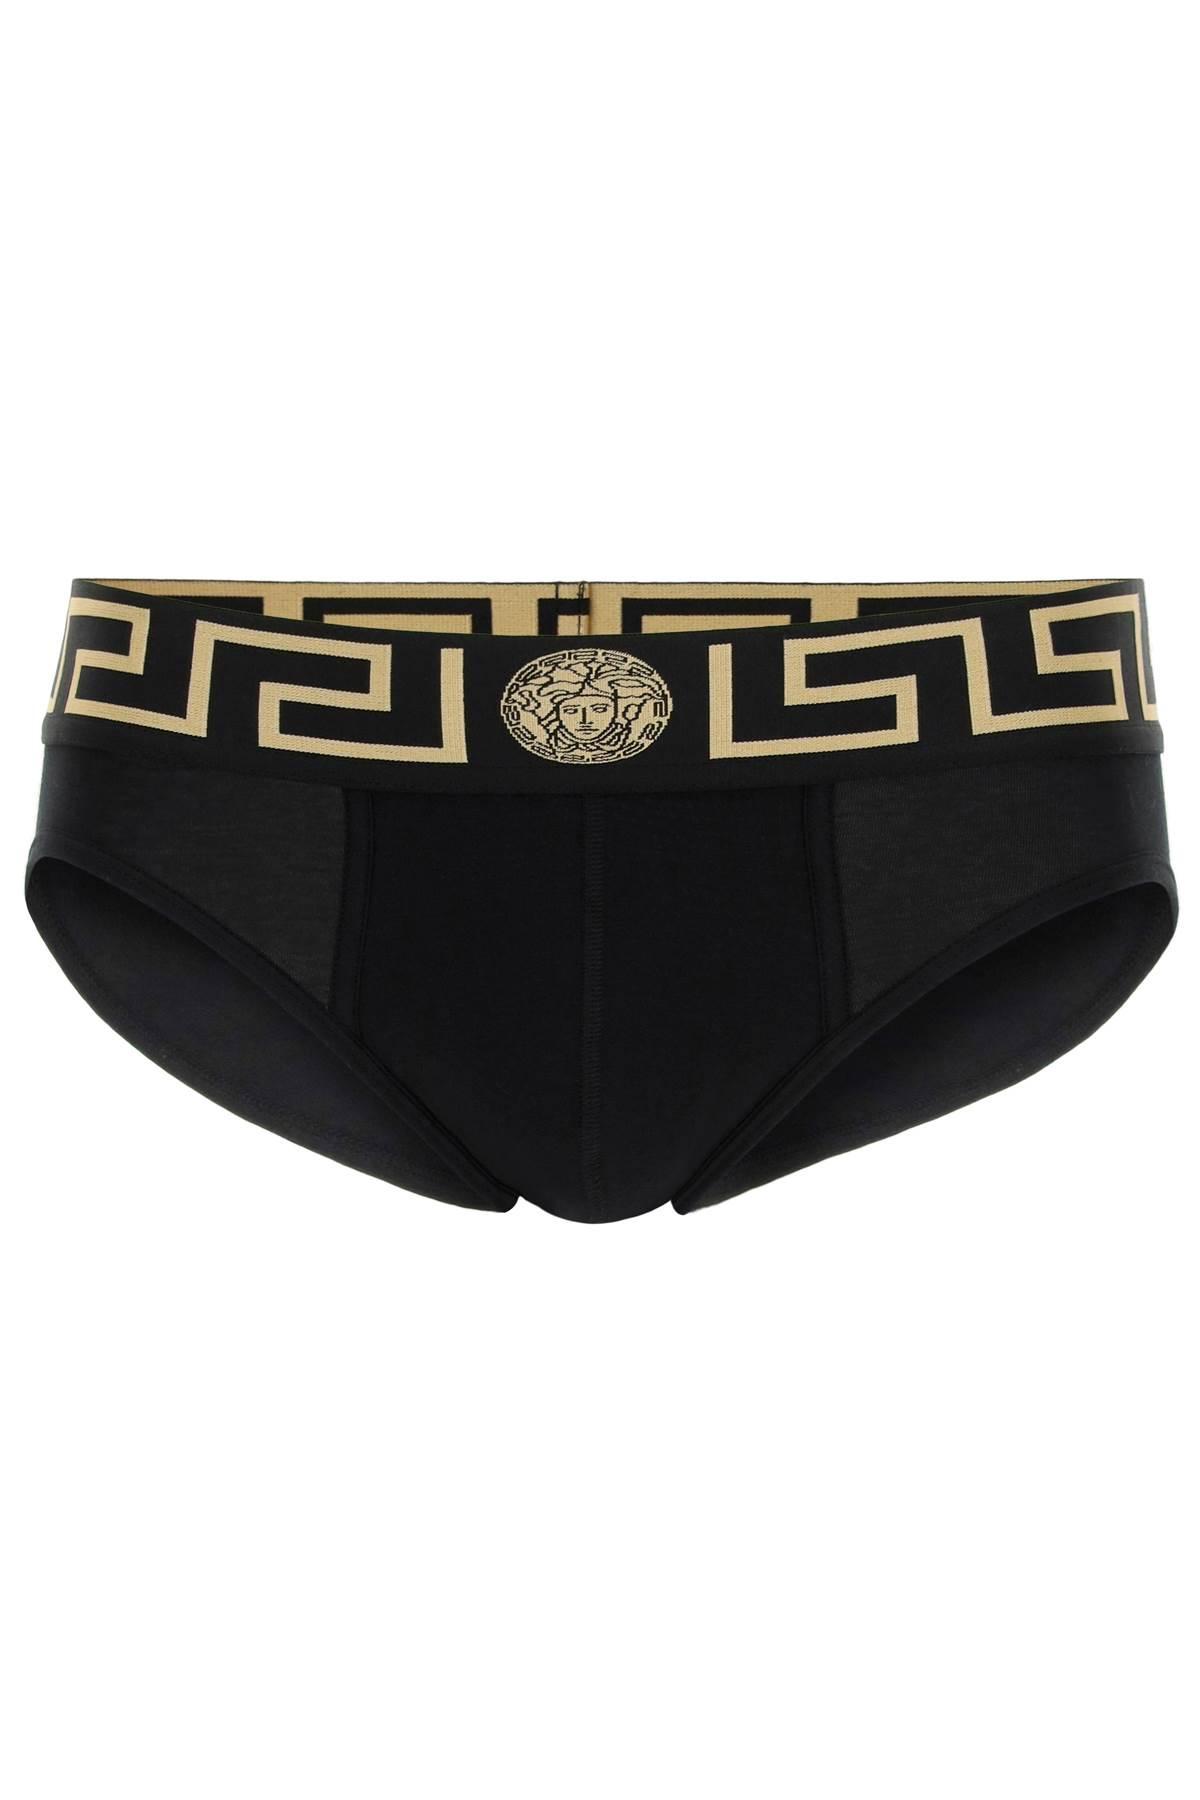 Men's Tri-pack Underwear Low Briefs by Versace